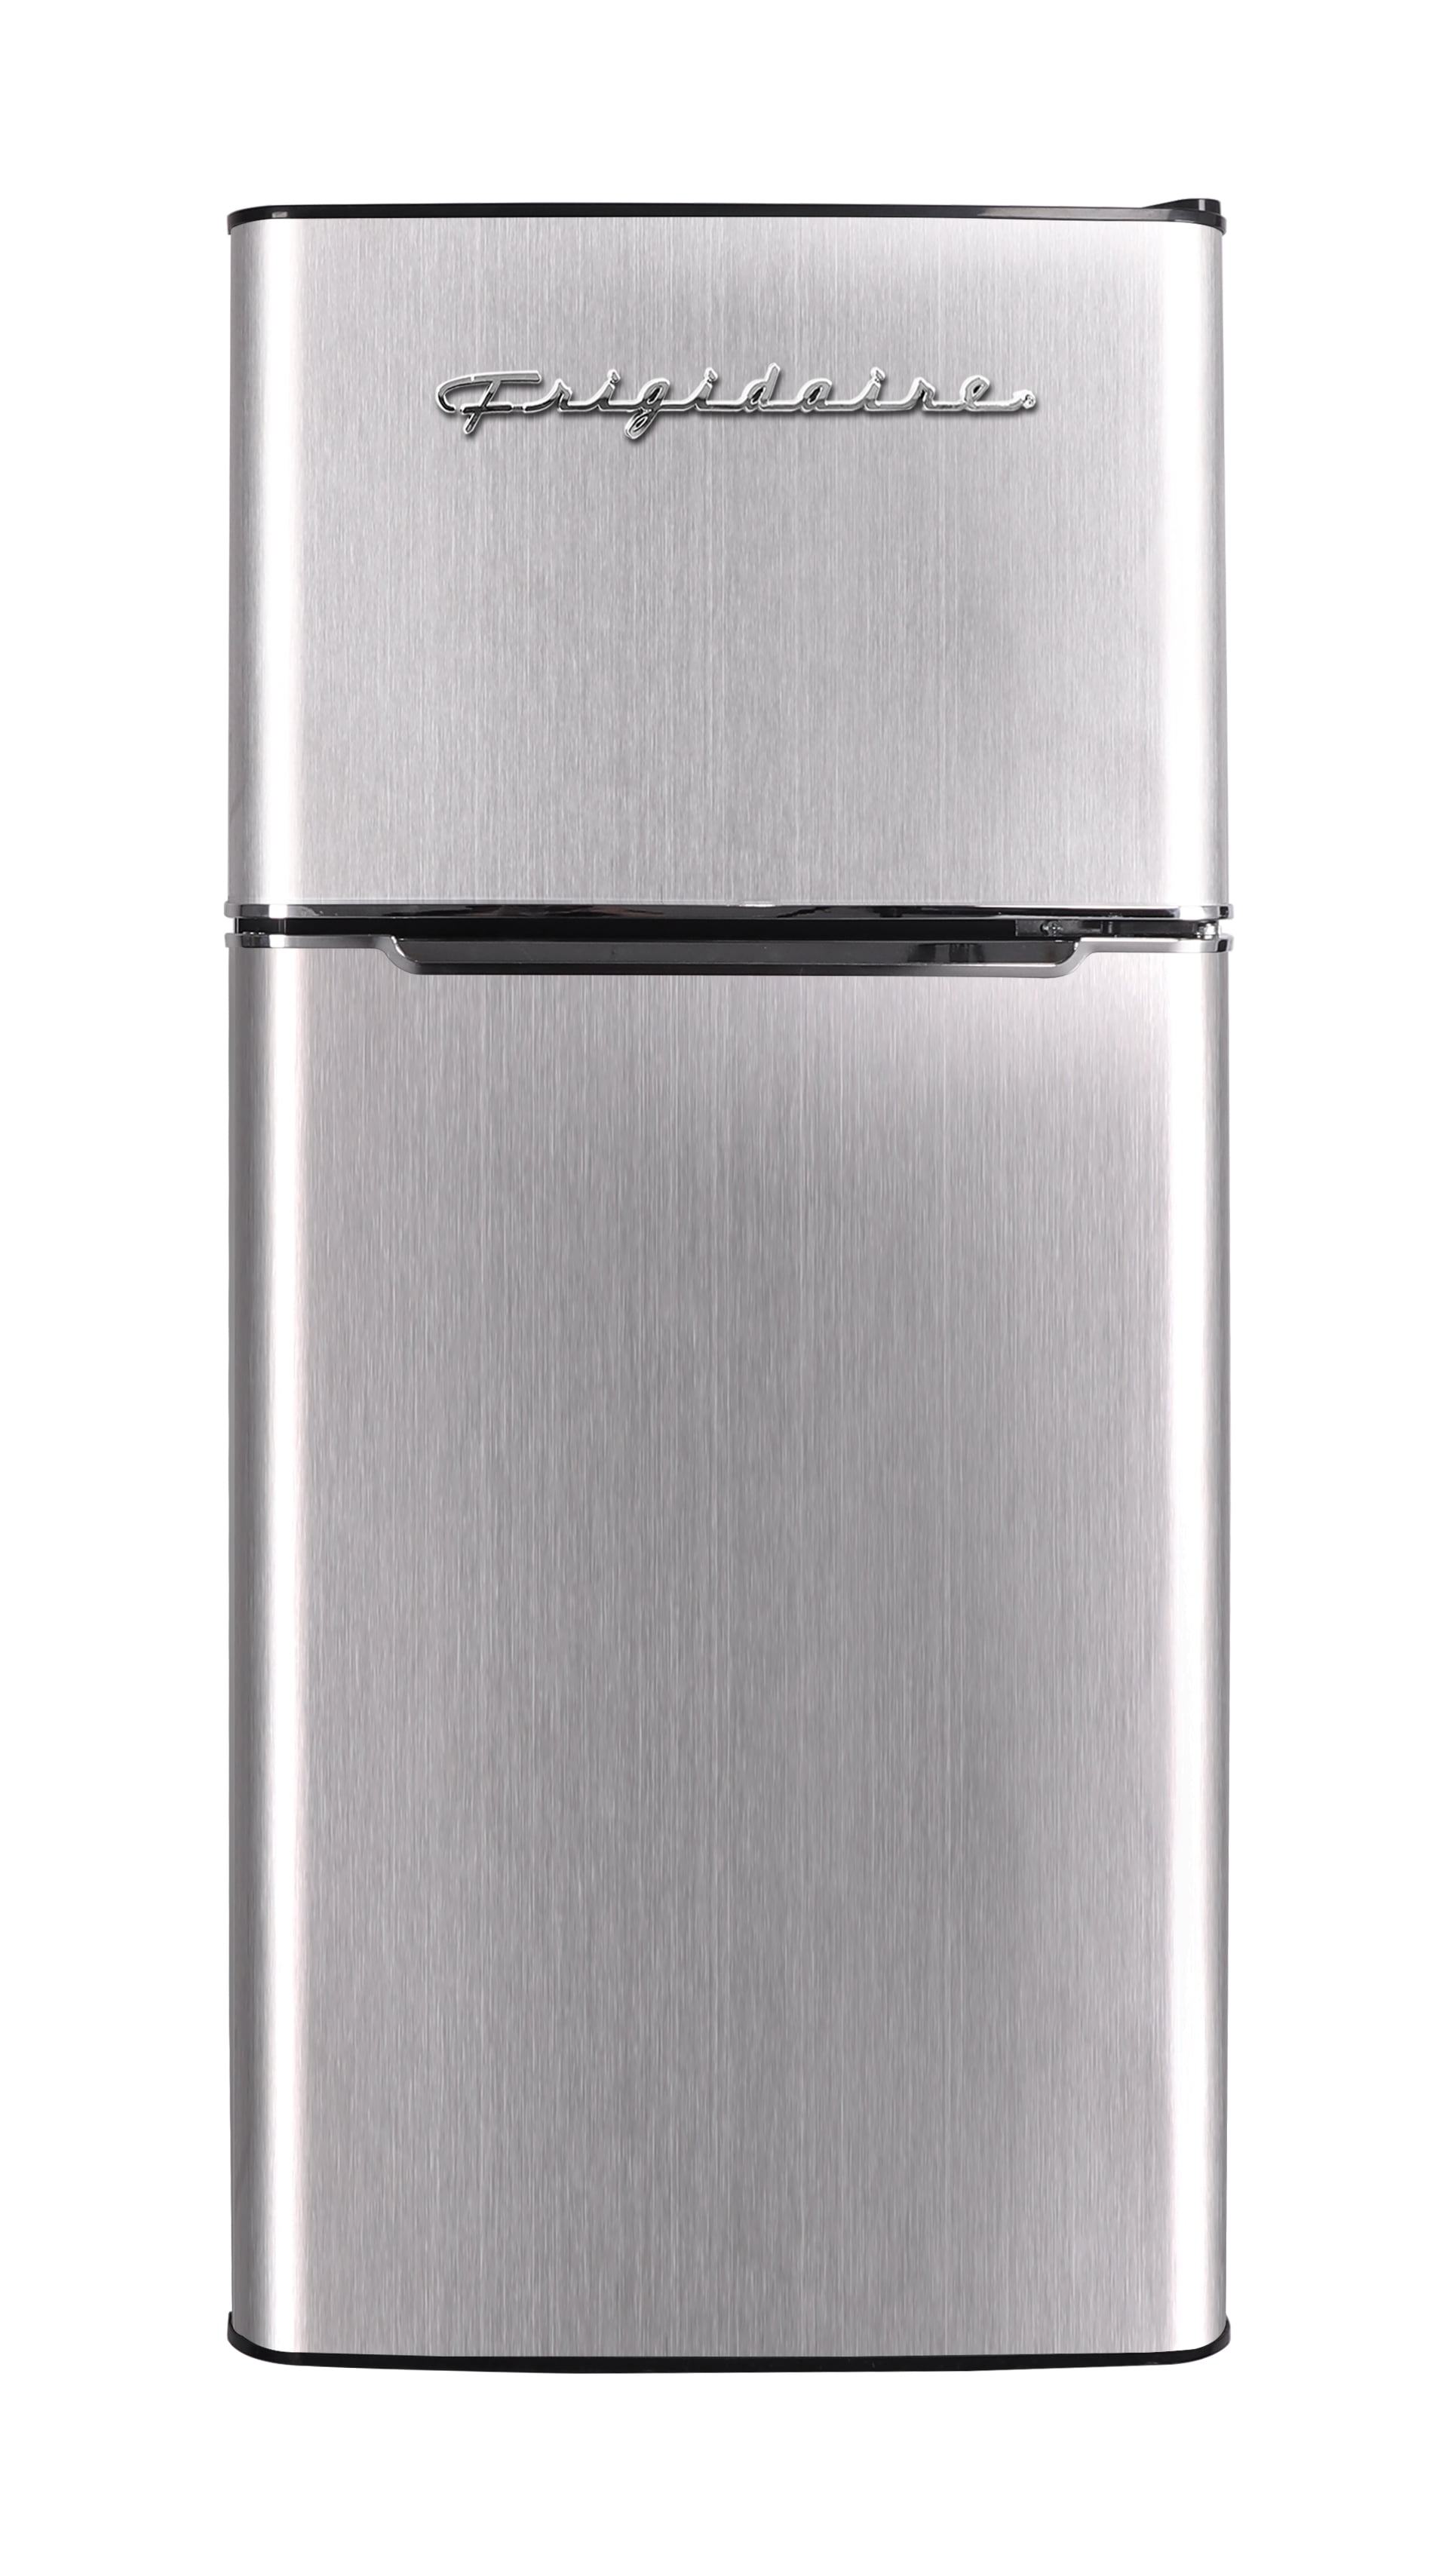 Frigidaire, 4.5 Cu. ft., 2 Door Compact Refrigerator-Chrome Trim, Efr451, Platinum